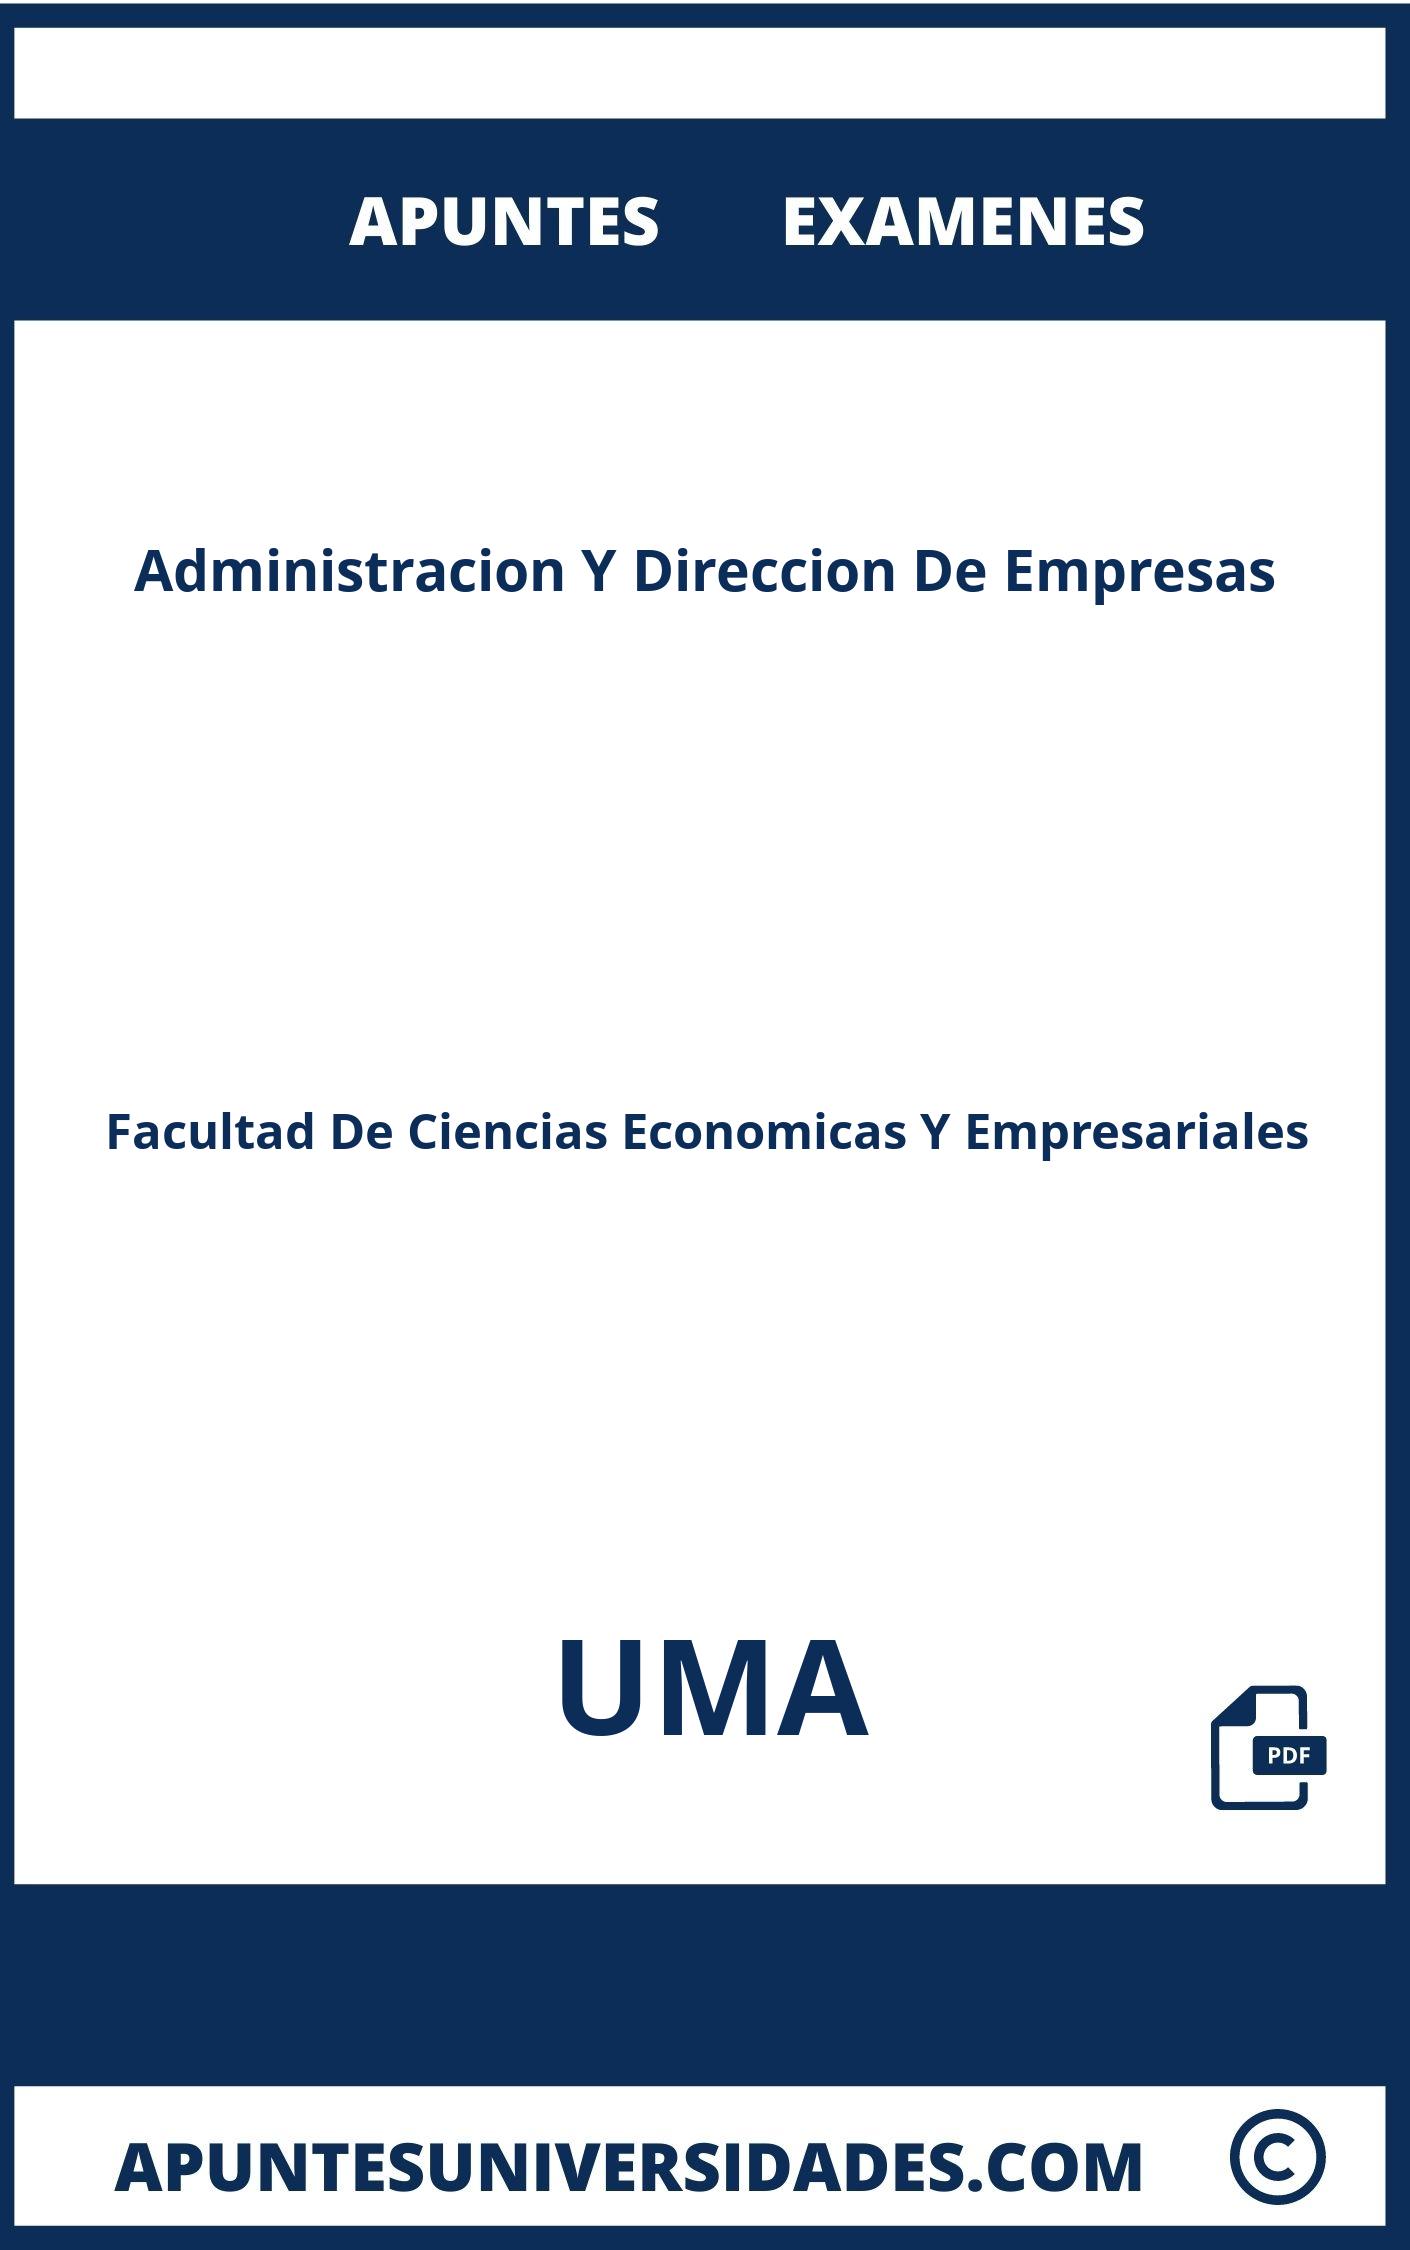 Examenes Apuntes Administracion Y Direccion De Empresas UMA